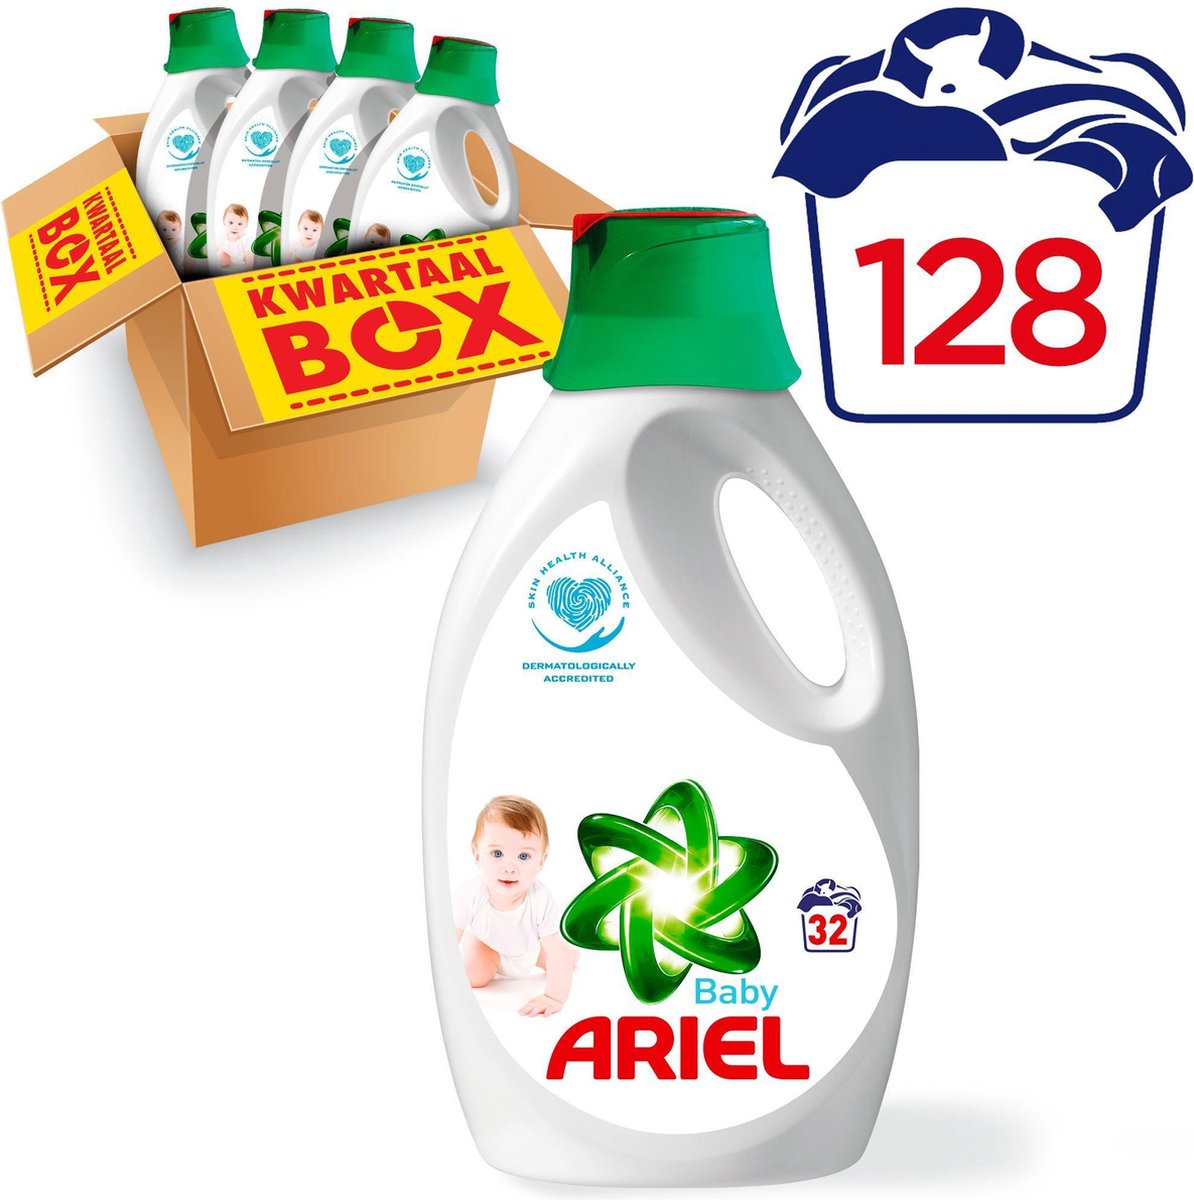 Ariel Baby - Kwartaalbox 128 Wasbeurten - |